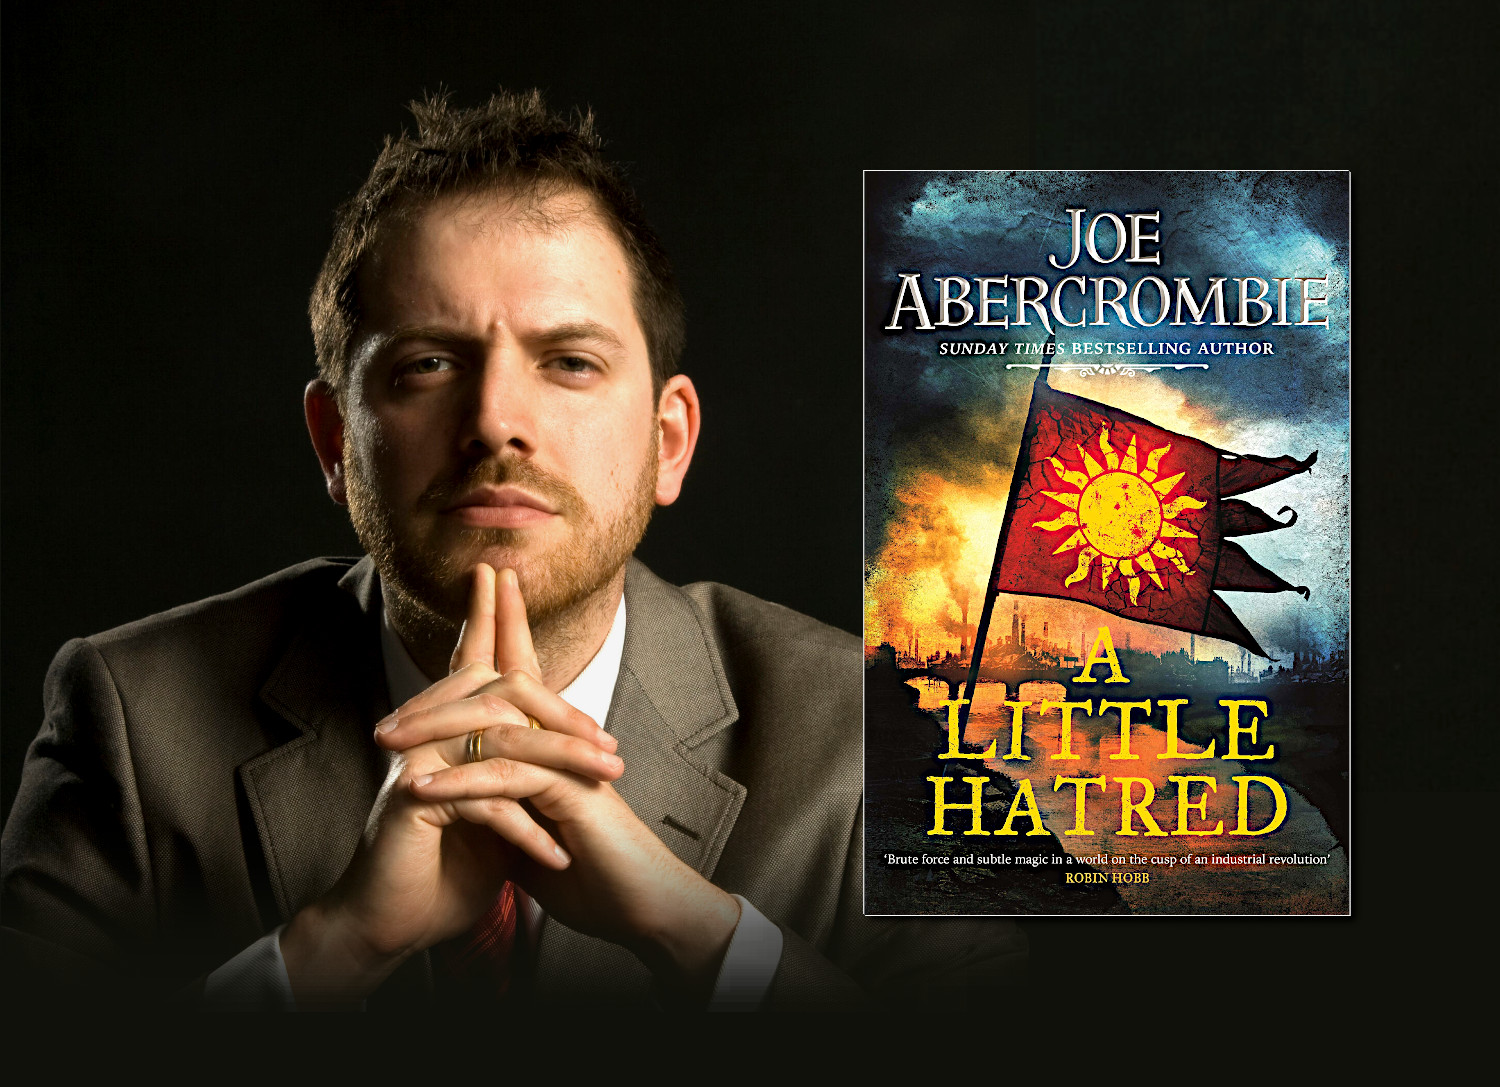 a little hatred by joe abercrombie